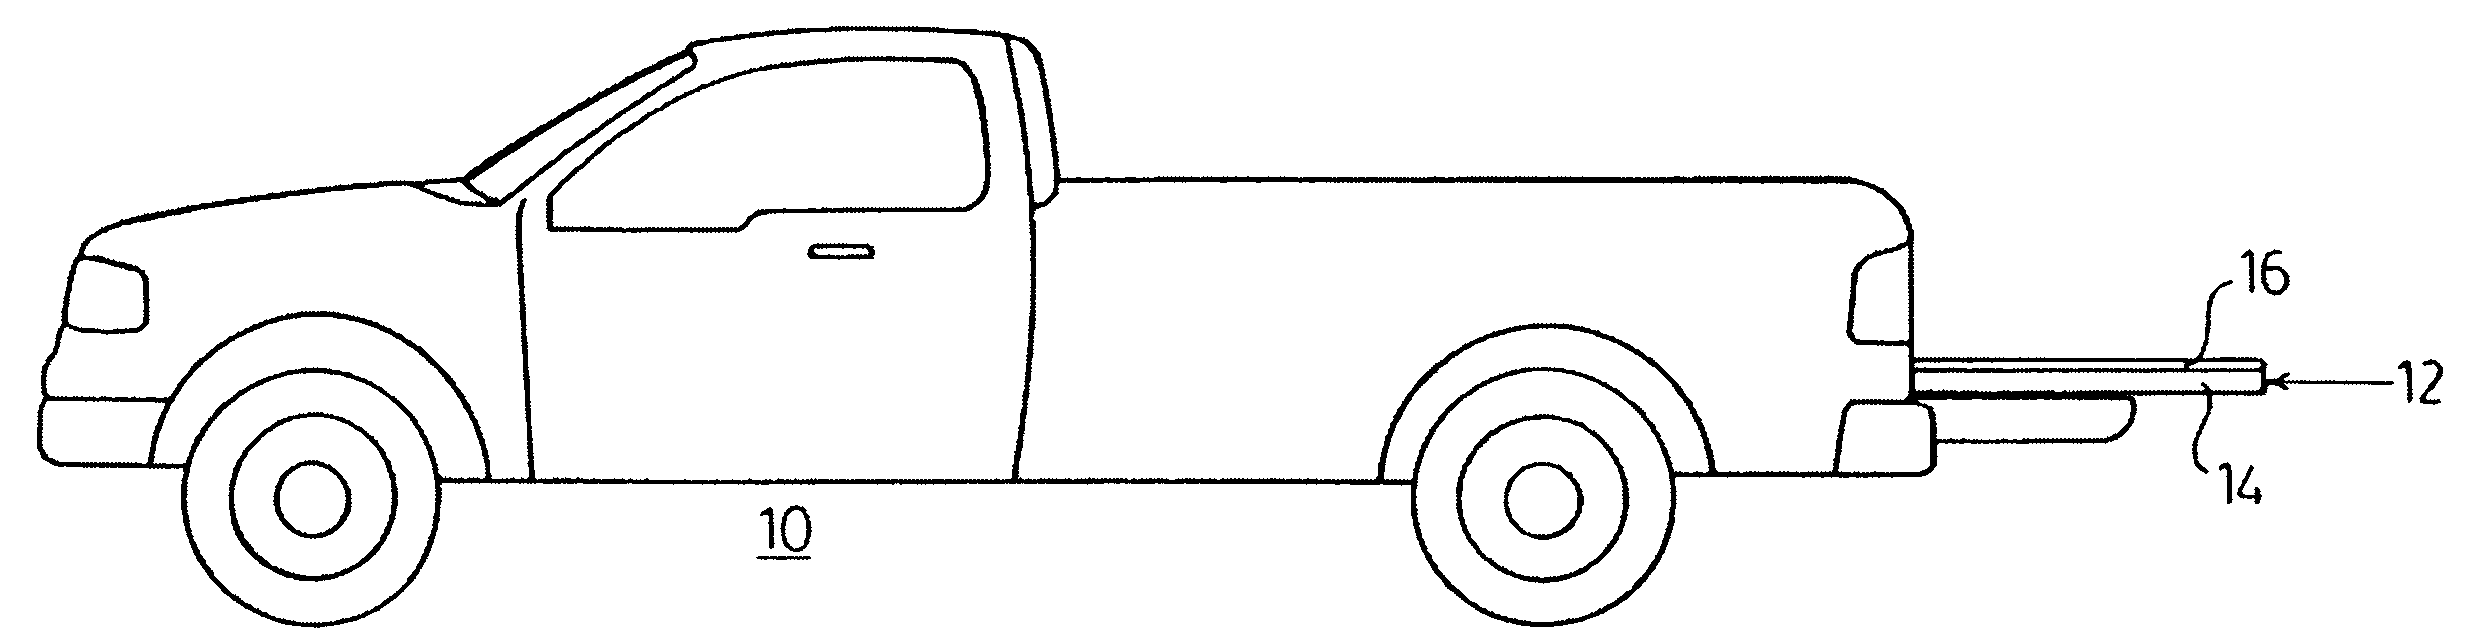 Sliding platform for a pick-up truck